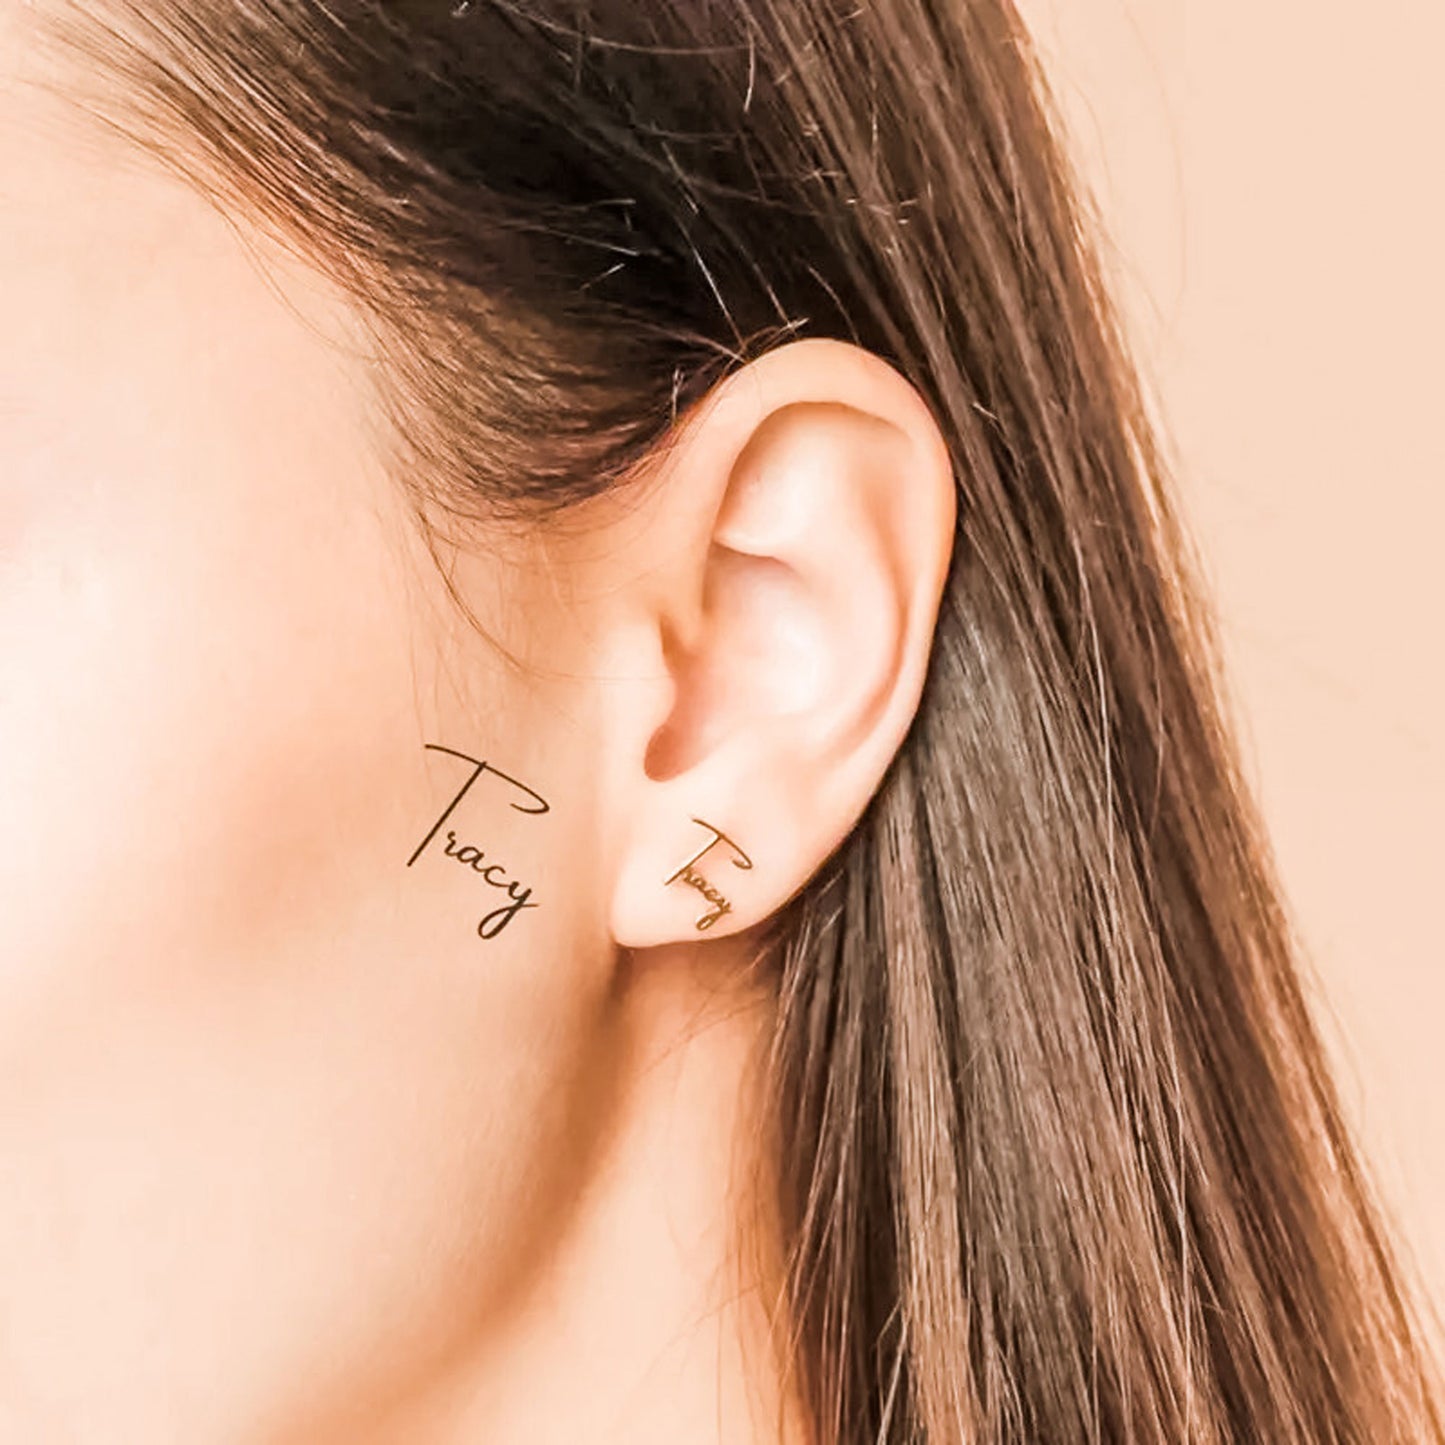 Image of Handwritten Custom Name Earrings featuring custom made earrings in gold and handwritten sample